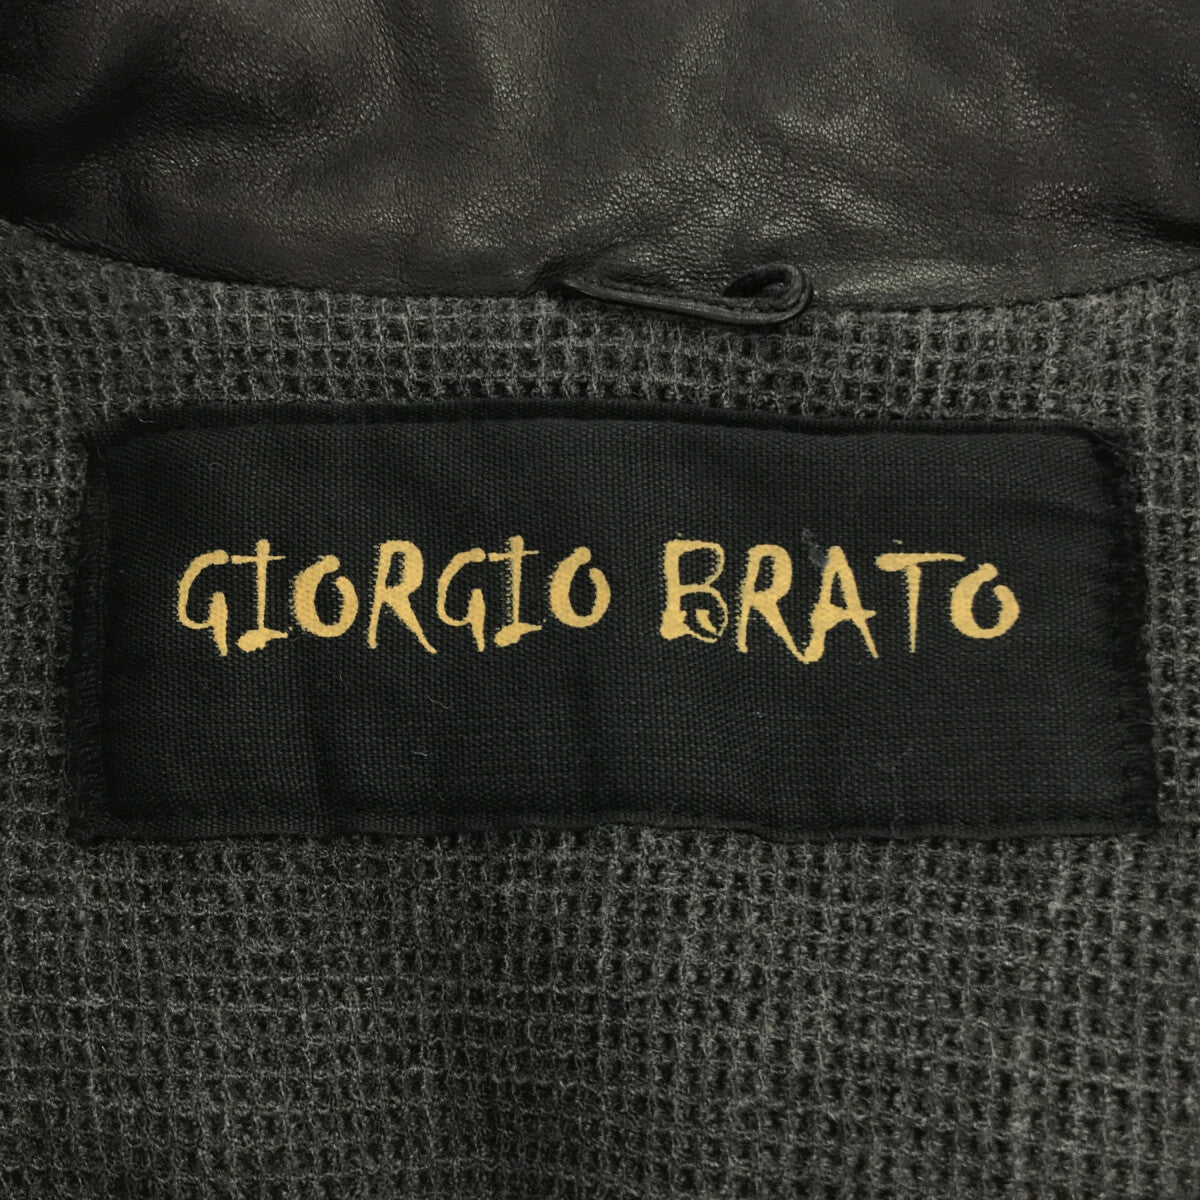 GIORGIO BRATO / ジョルジオブラット | ラムレザー 袖リブ ハイネック シングルライダース ジャケット | 46 | ブラック | メンズ